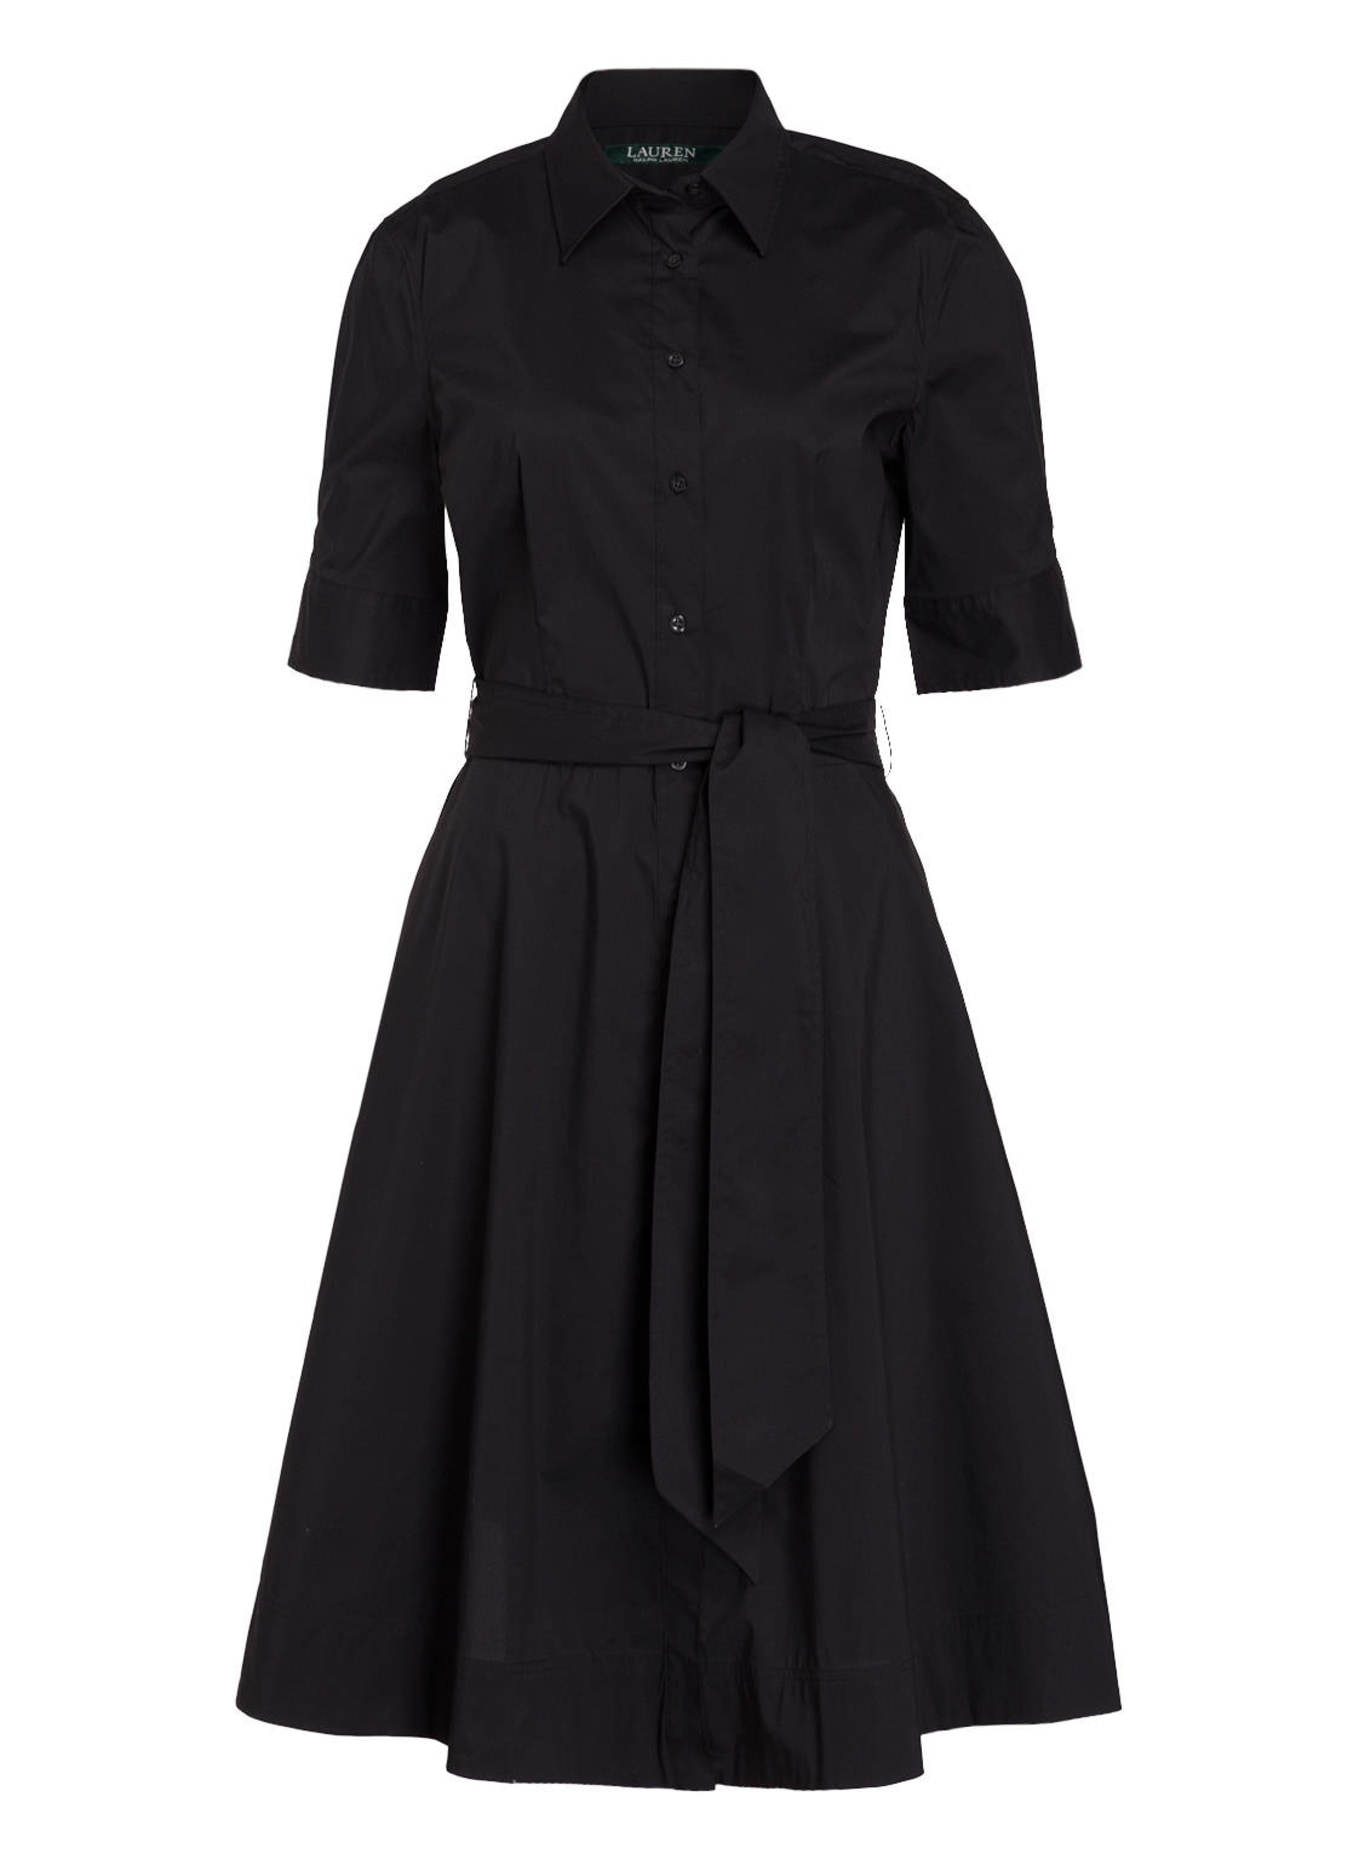 LAUREN RALPH LAUREN Shirt dress, Color: BLACK (Image 1)